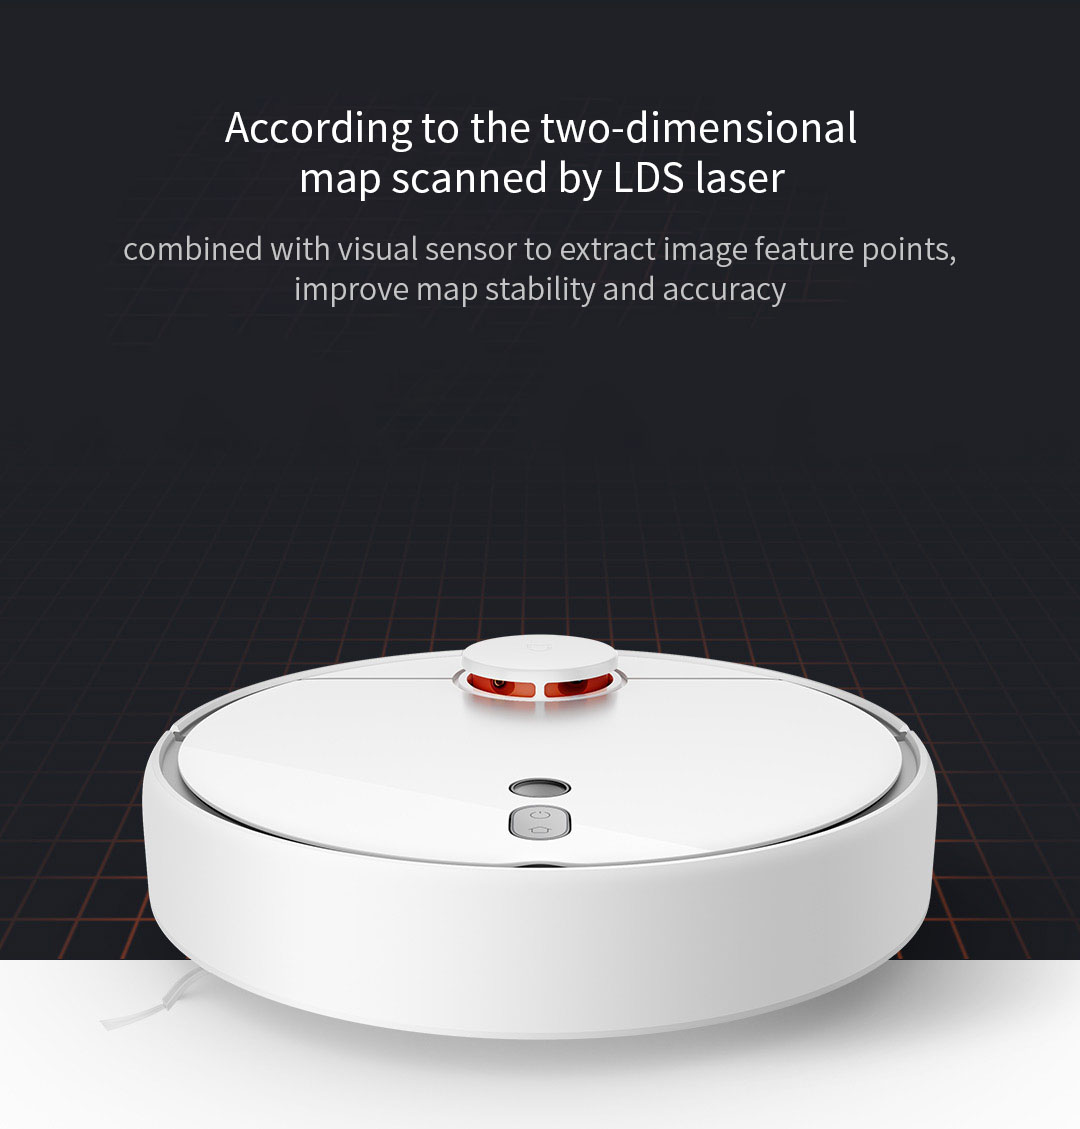 Xiaomi Mi Robot Vacuum 1S comprar barato al precio minimo de oferta con cupón descuento. Con envío GRATIS Libre de aduanas para España